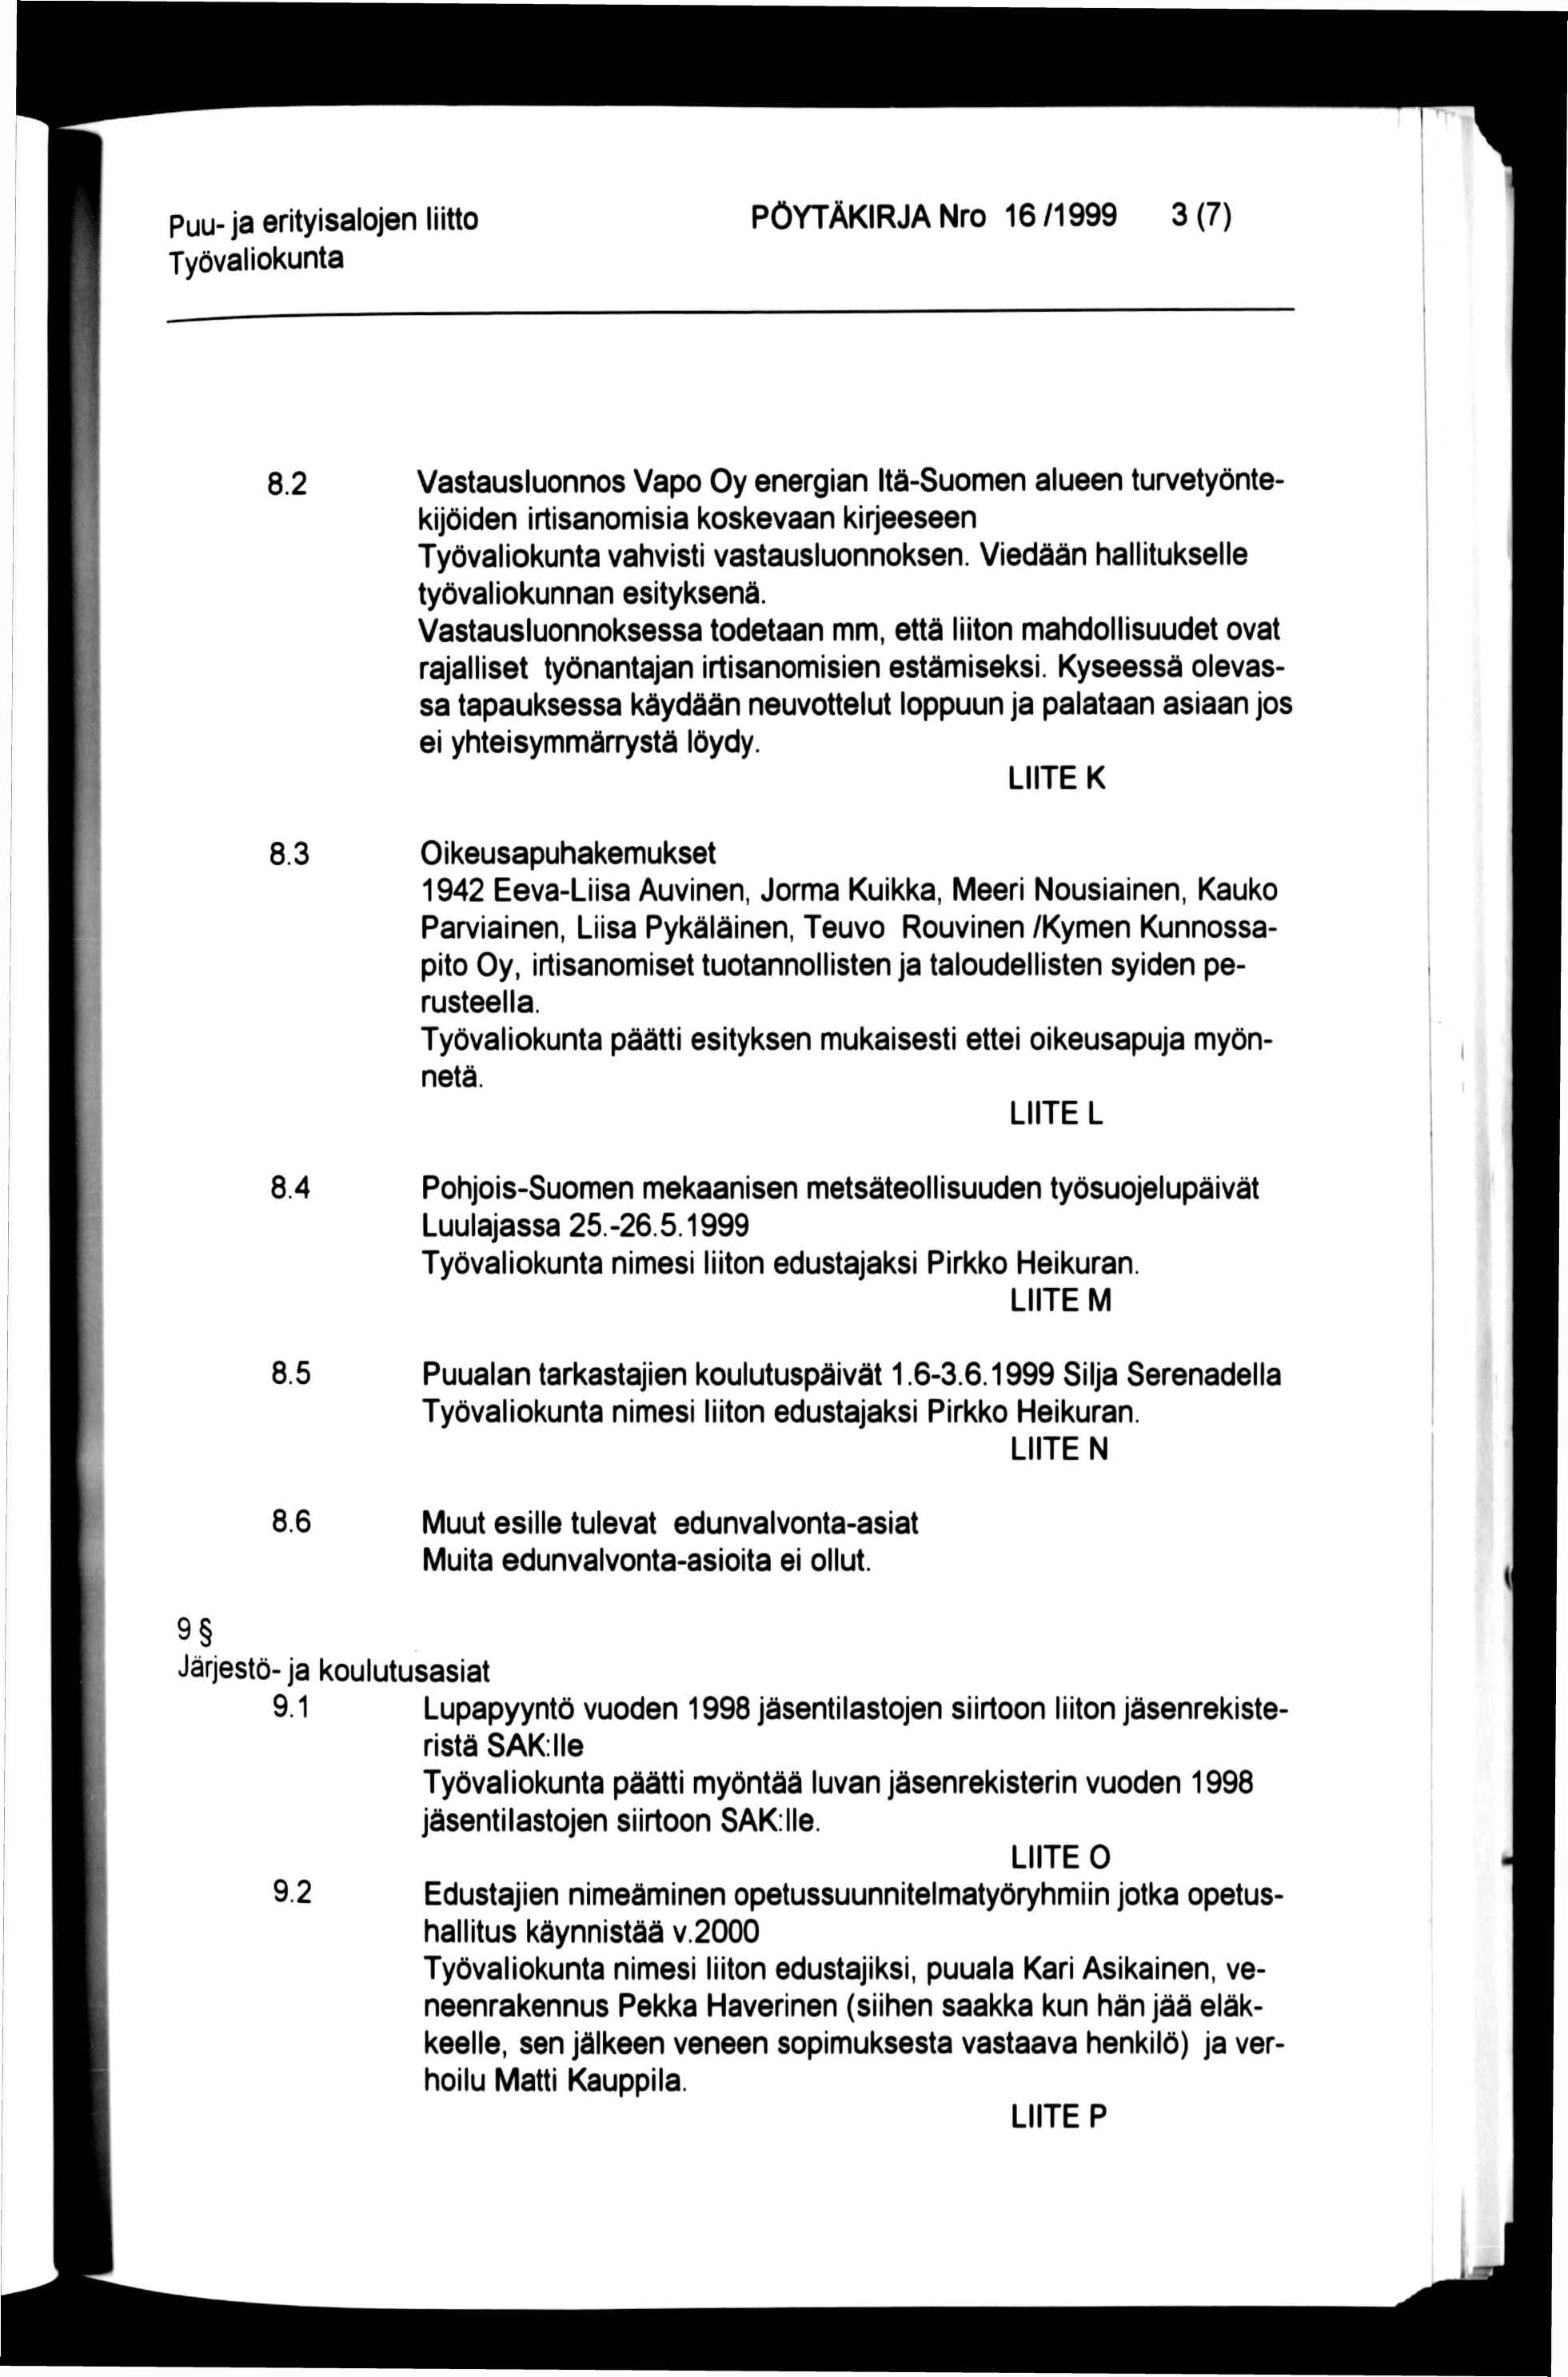 Puu-ja erityisalojen liitto PÖYTÄKIRJA Nro 16/1999 3(7) ('- ti "i. 8.